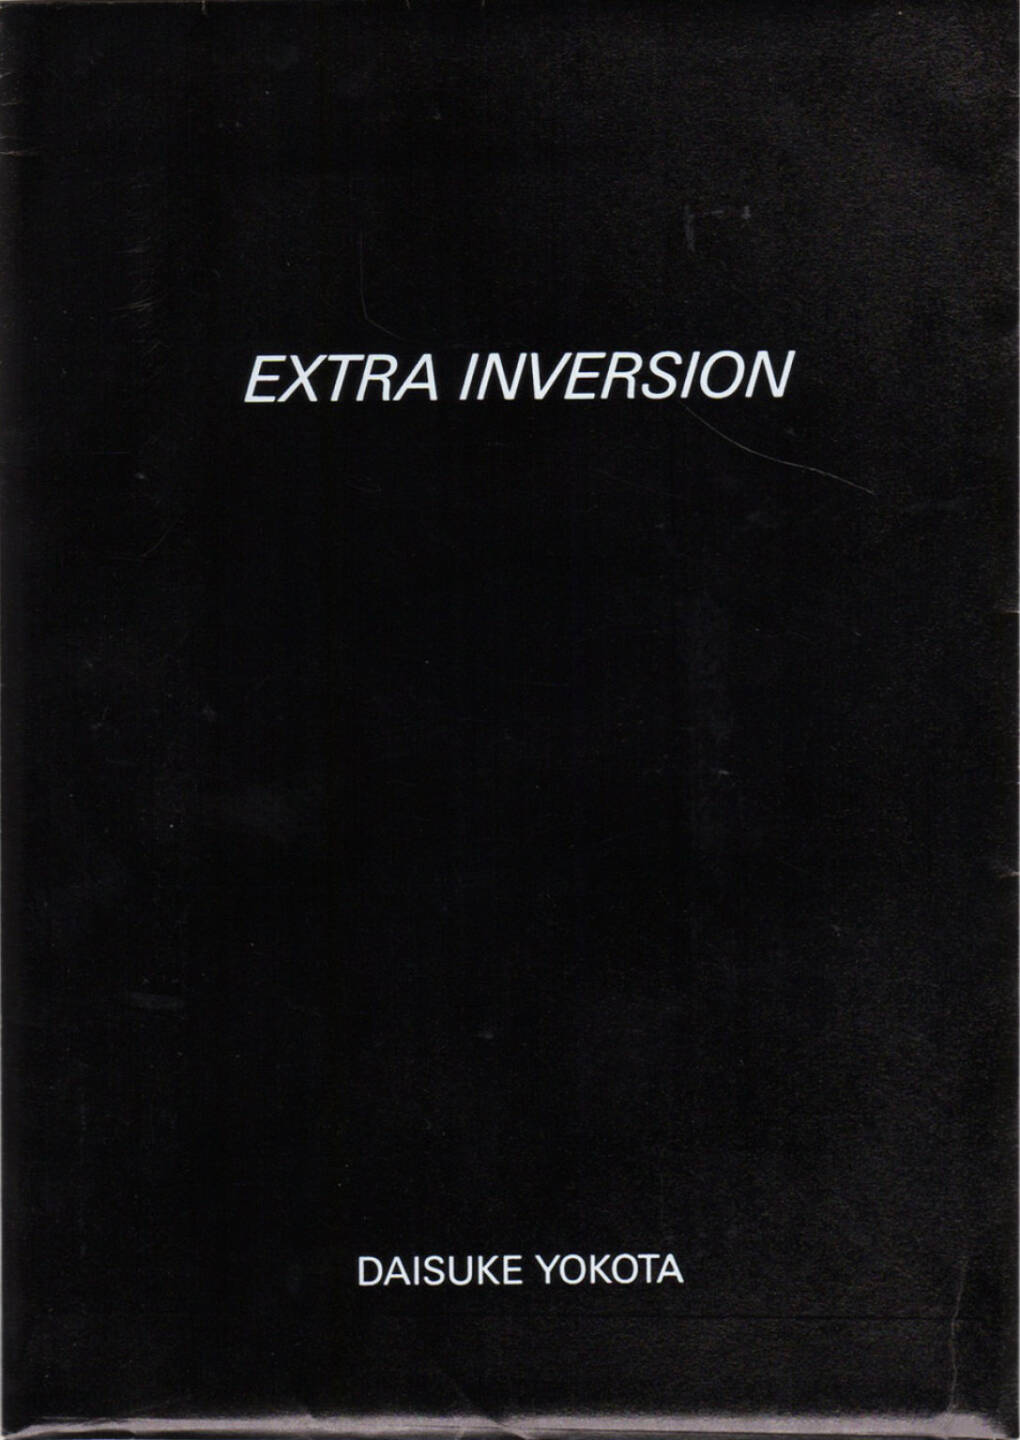 Daisuke Yokota - Inversion, Jean Kenta Gauthier and Twelvebooks 2015, Cover - http://josefchladek.com/book/daisuke_yokota_-_inversion